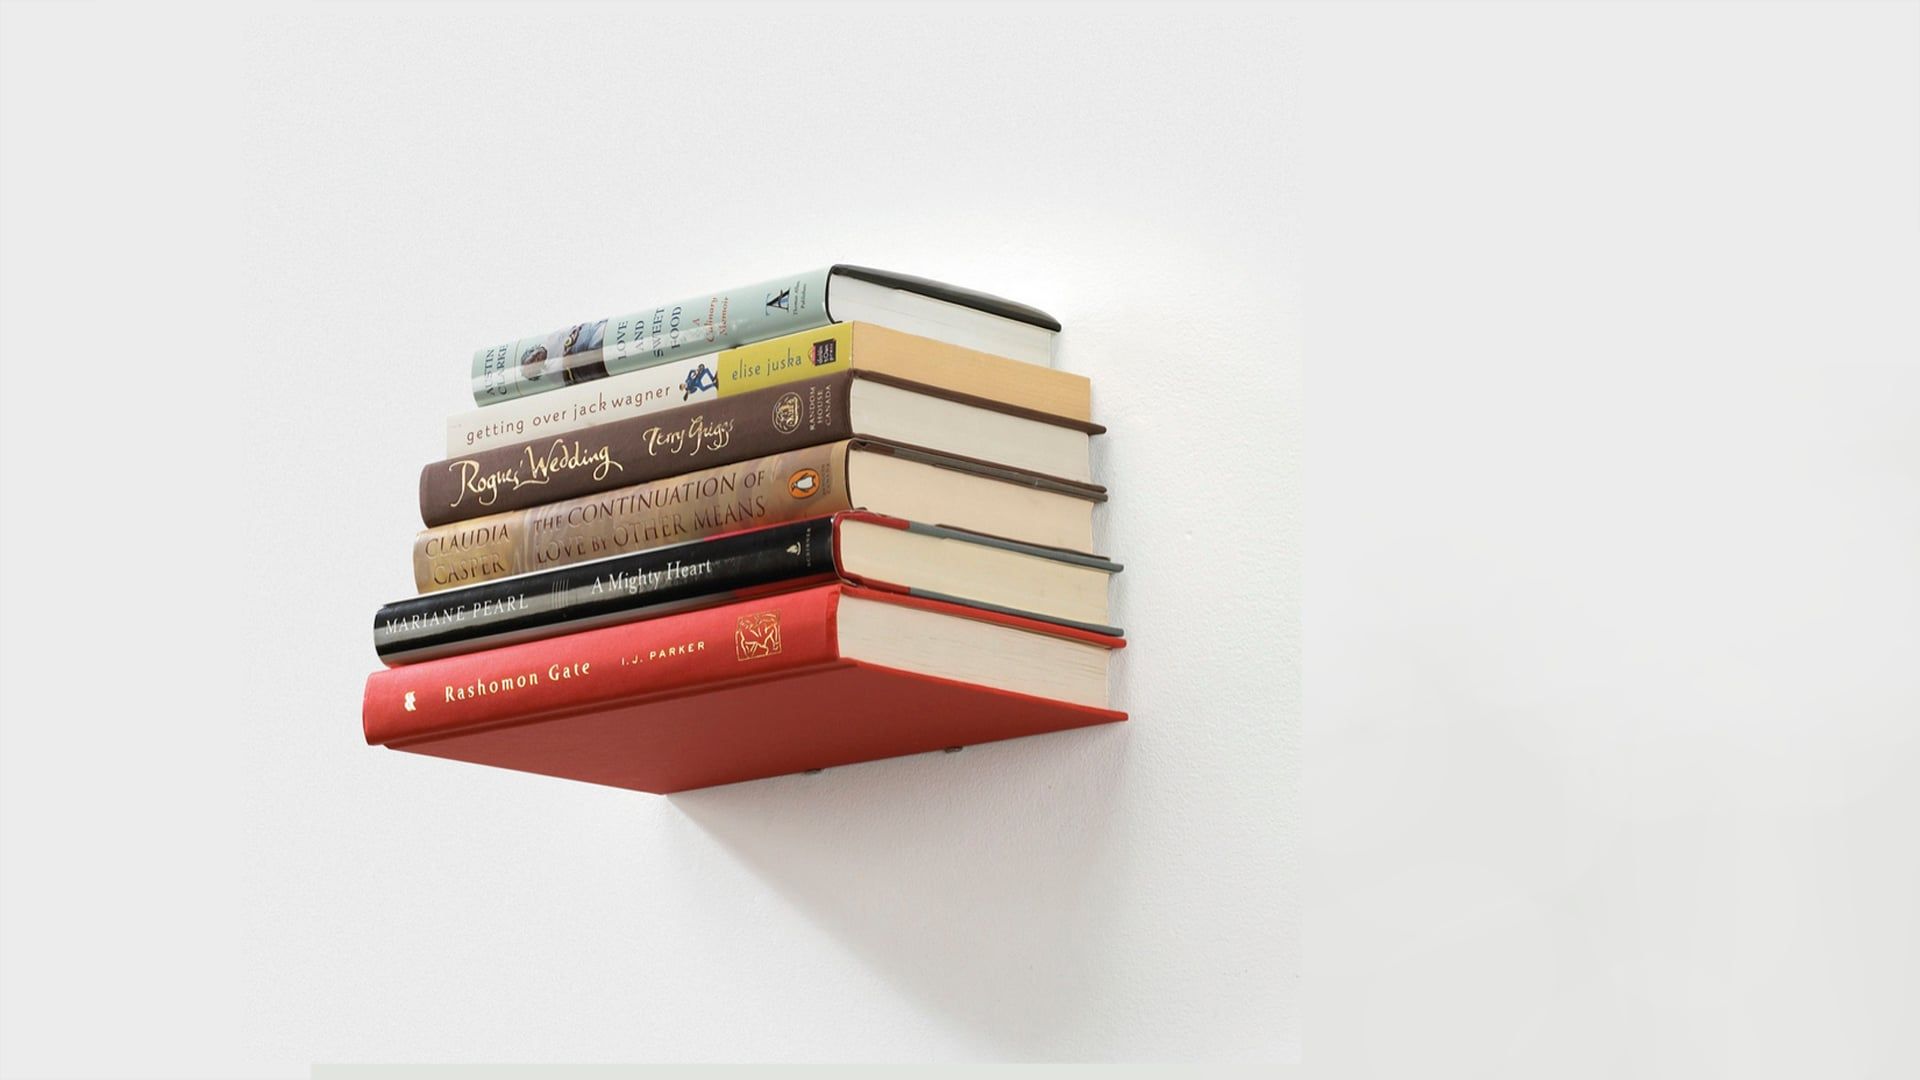 Invisible Book Shelf